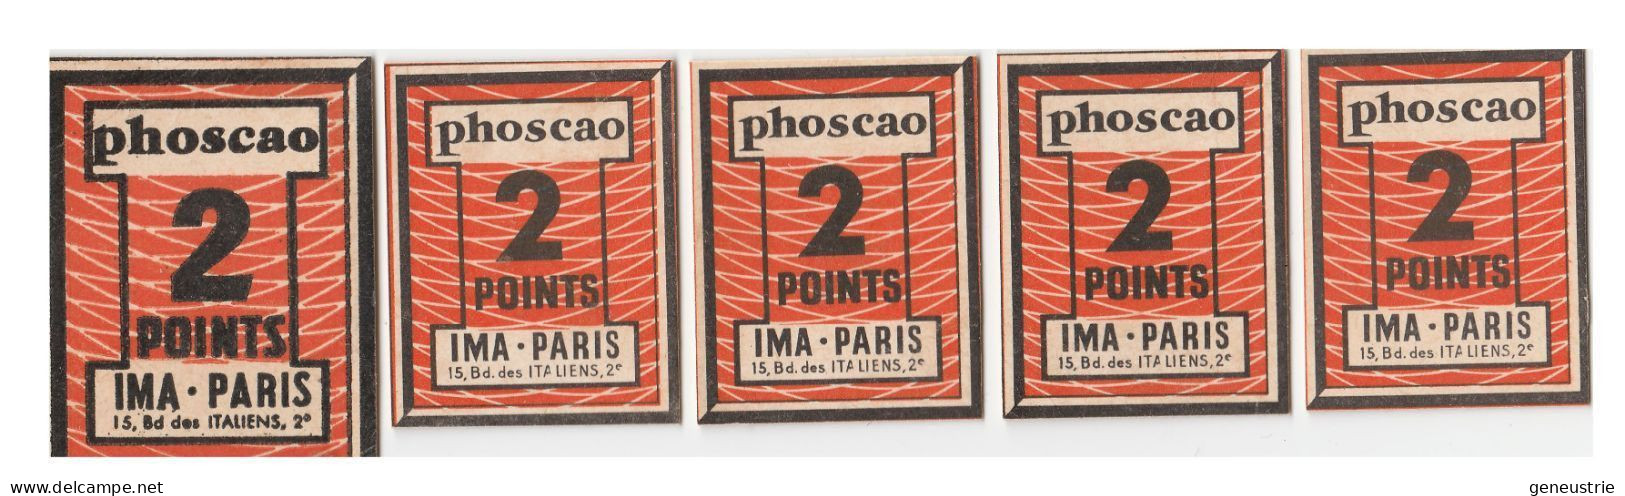 Lot De 5 Jeton-carton / Bon Prime Chocolat Années 50 "Phoscao 2 Points - IMA 15, Bd Des Italiens Paris 2e" - Monétaires / De Nécessité